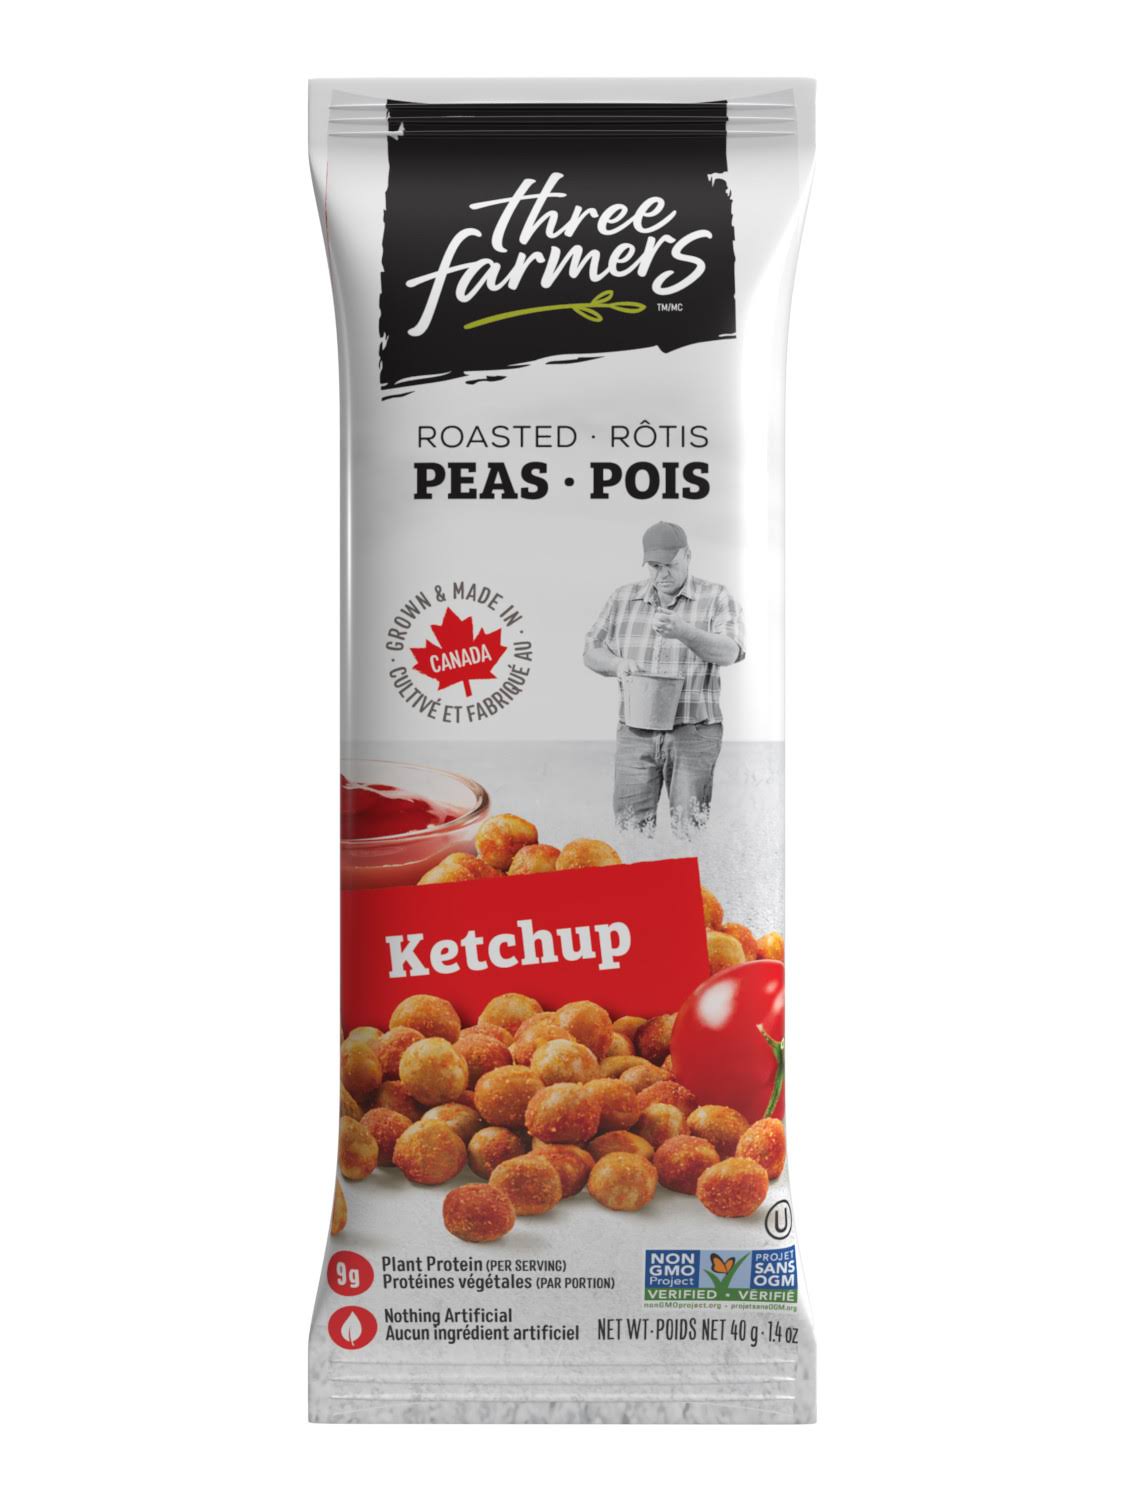 Three Farmers - Peas - Ketchup Snack Packs - Packaging of 40g